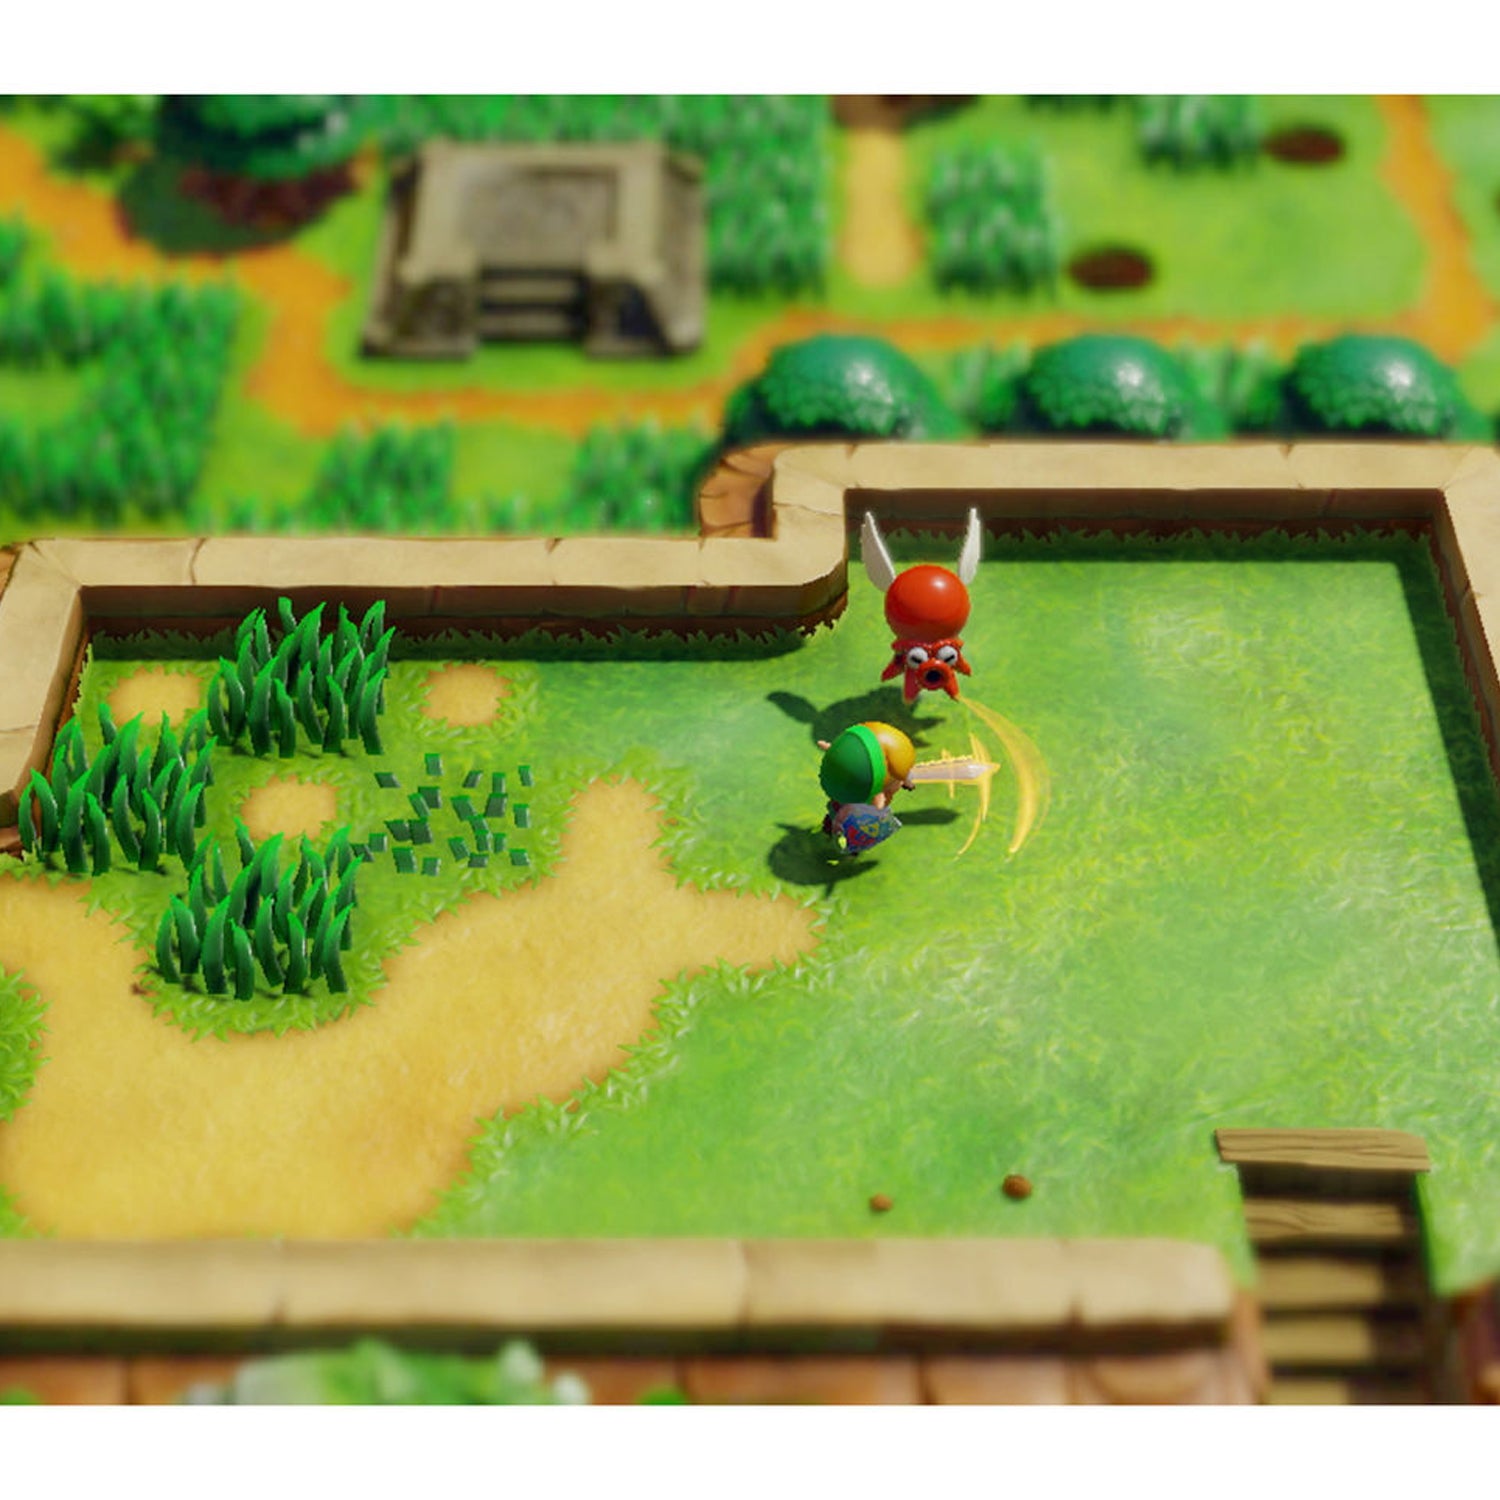 The Legend of Zelda: Links Awakening + The Legend of Zelda: Breath of the Wild - 2 Game Bundle - Nintendo Switch